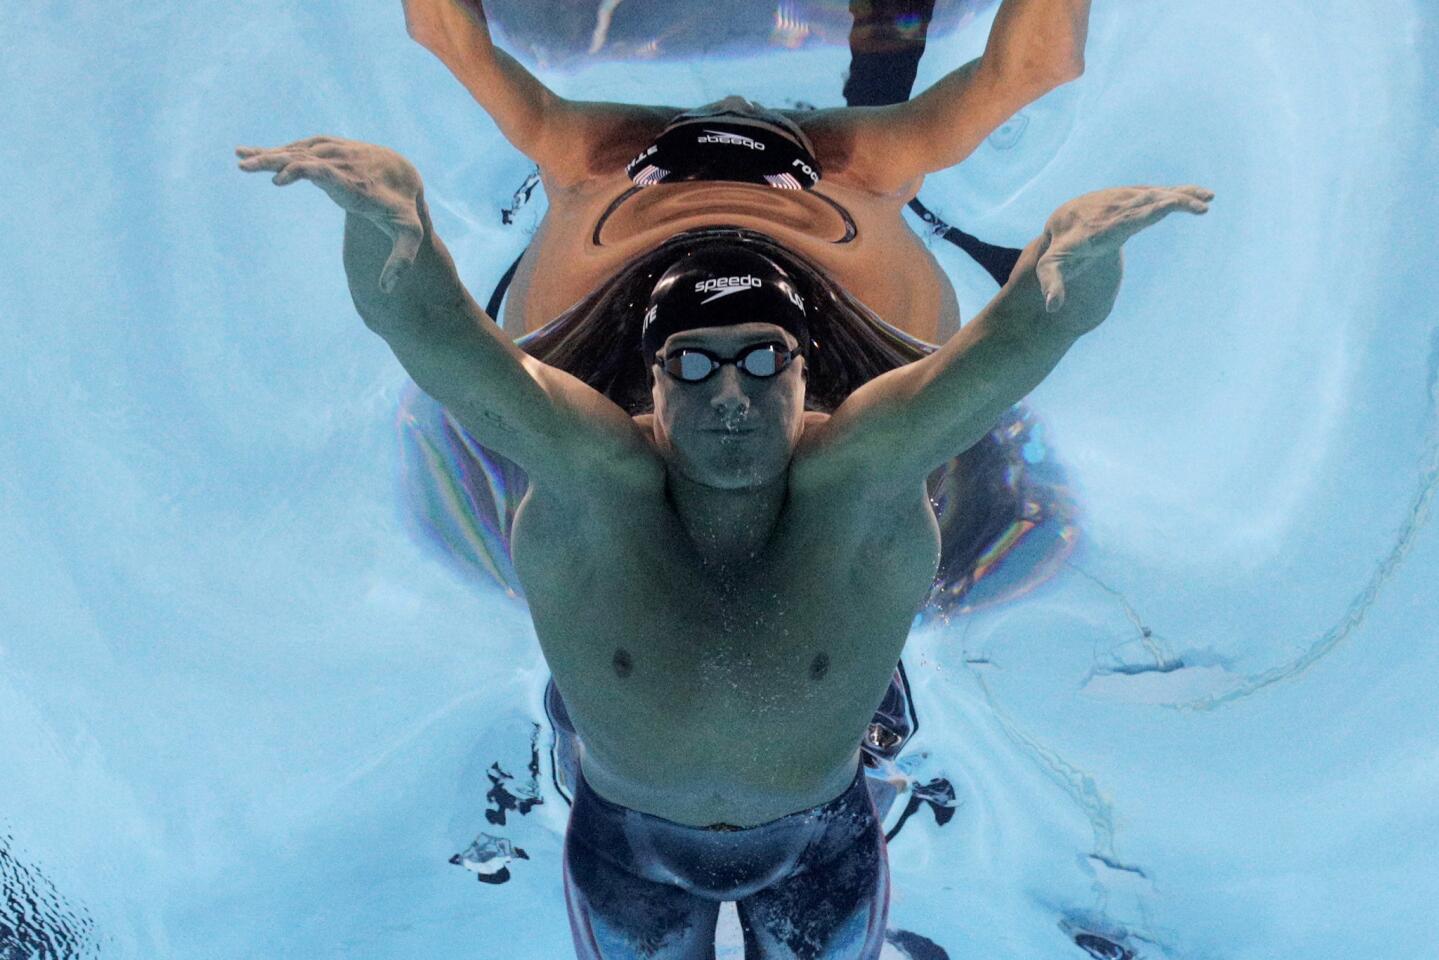 USA swimmer Ryan Lochte